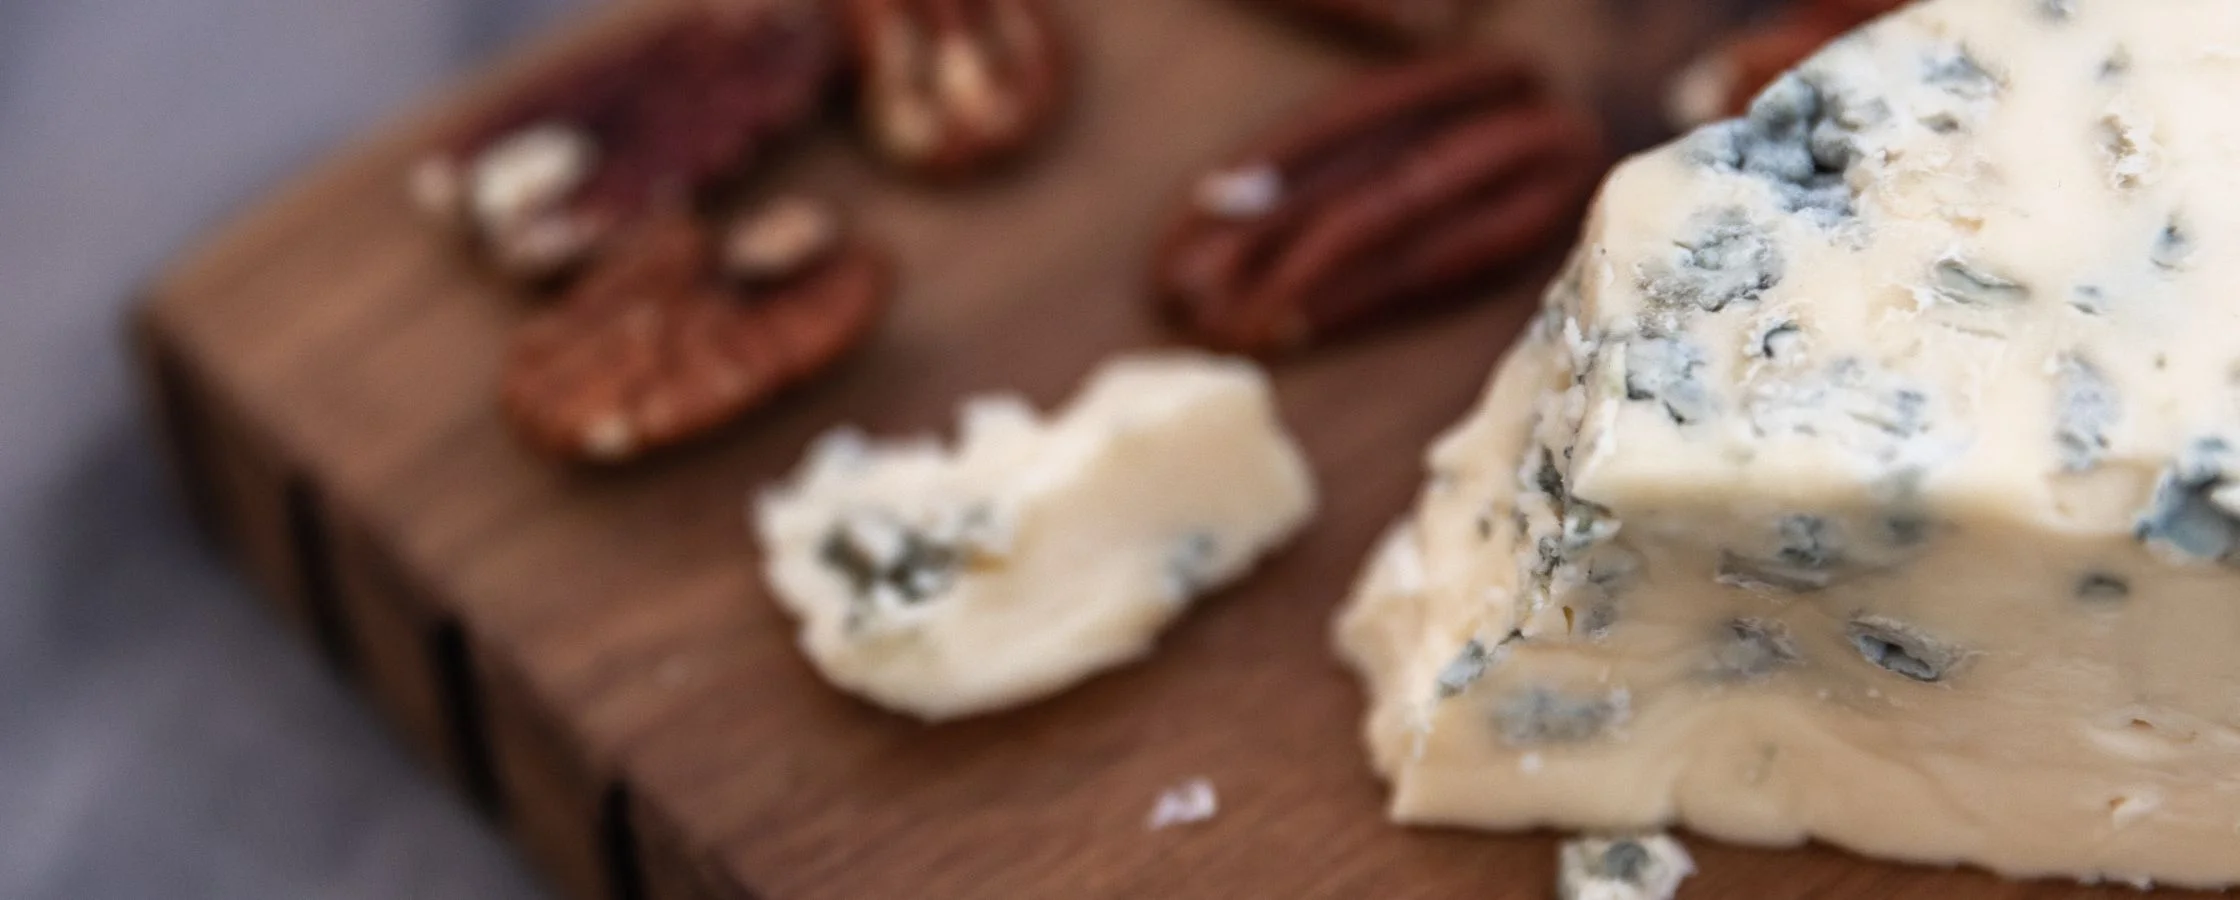 Queijo Azul – Tudo sobre queijos azuis em 5 minutos!